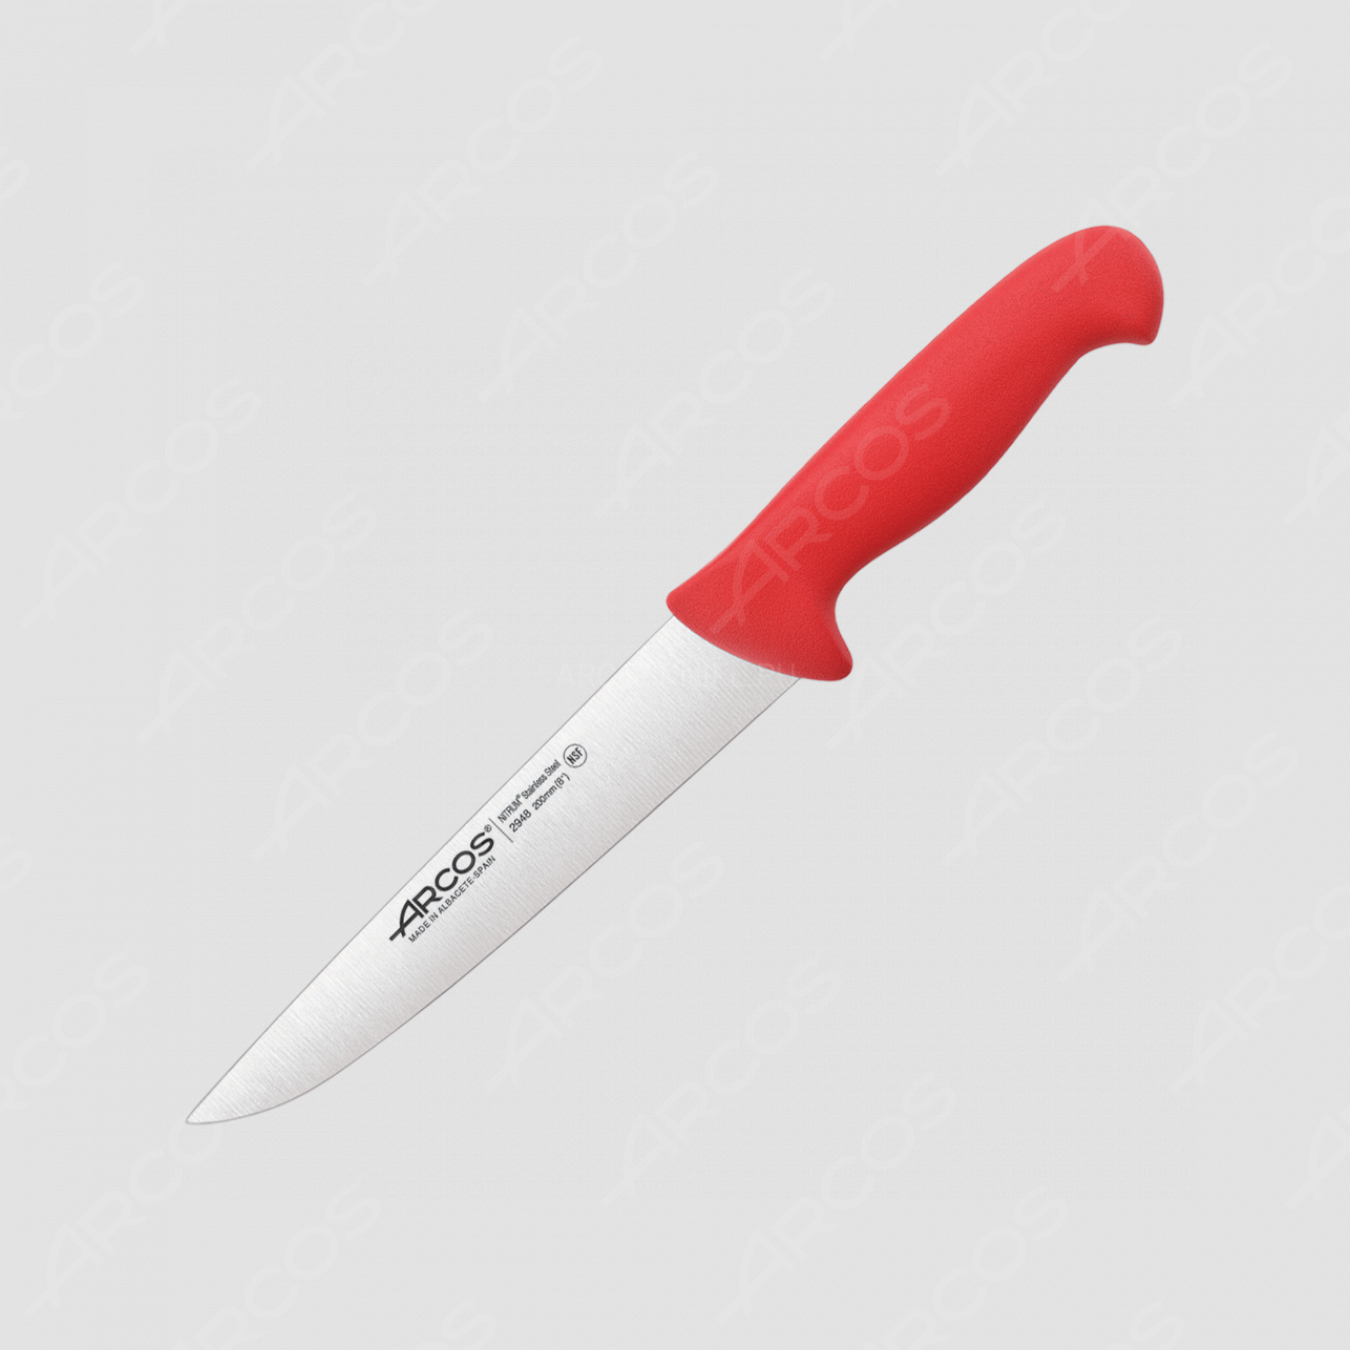 Нож кухонный для разделки мяса 20 см, рукоять - красная, серия 2900, ARCOS, Испания